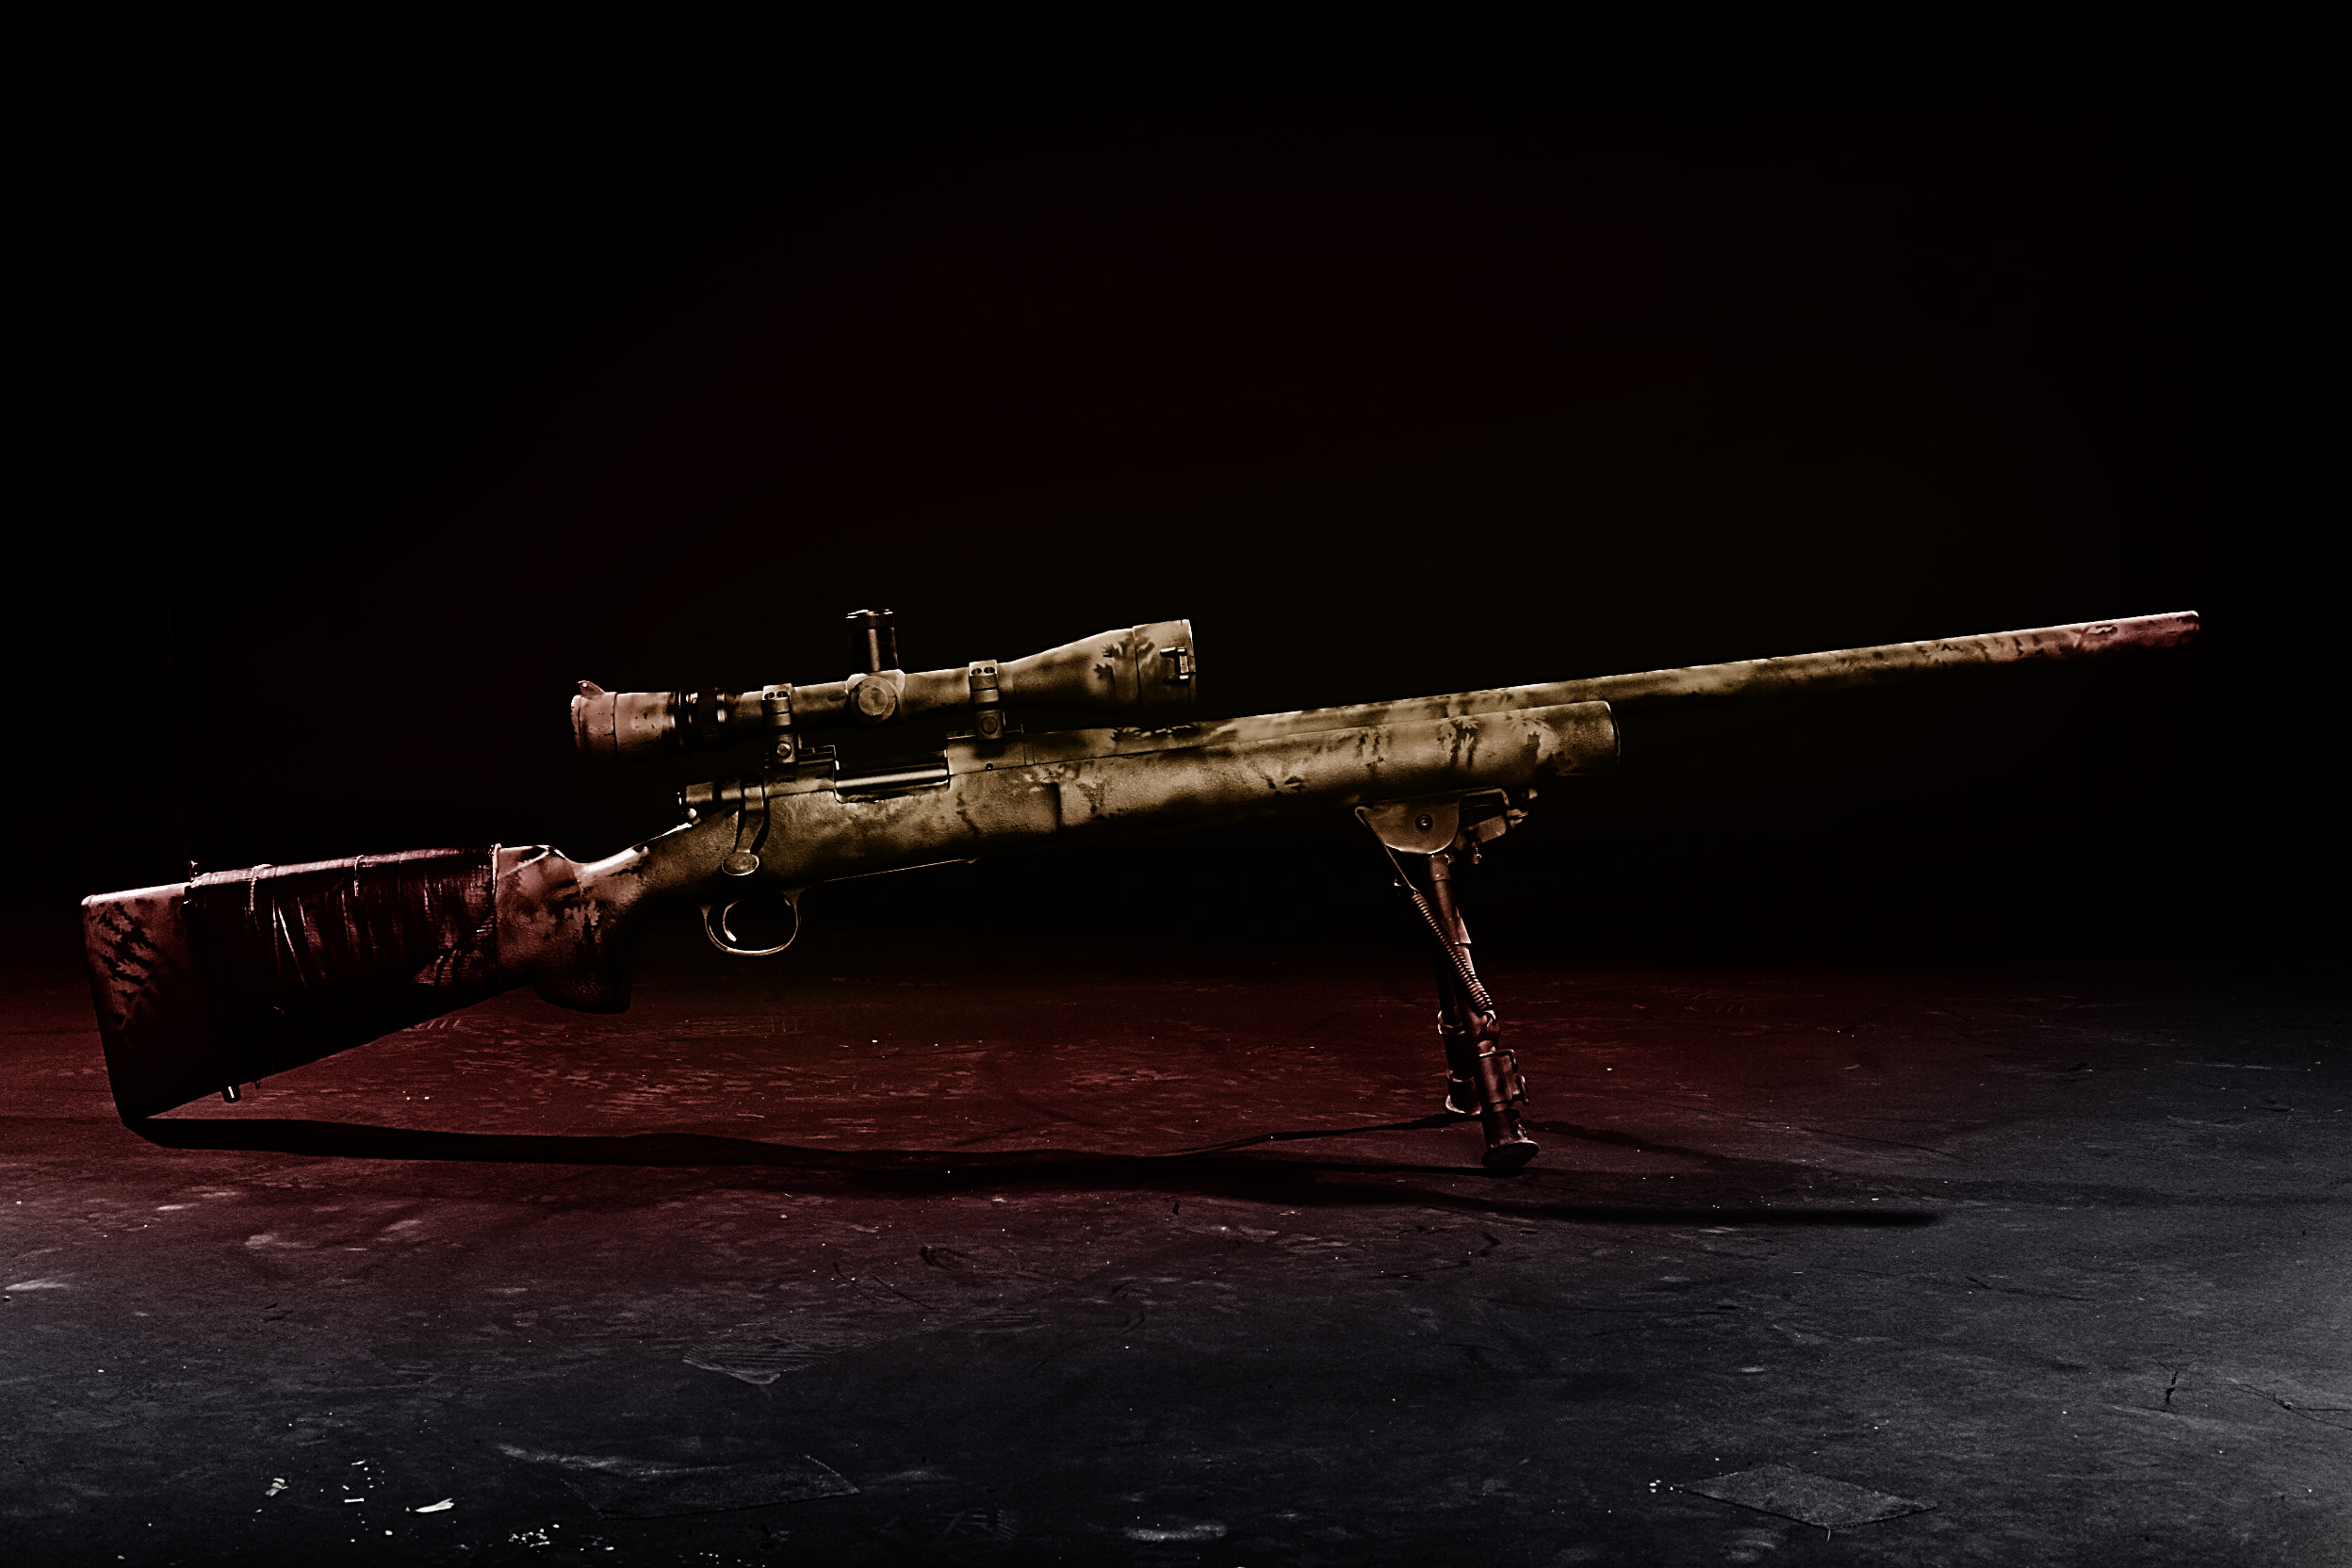 guns, sniper rifles - desktop wallpaper